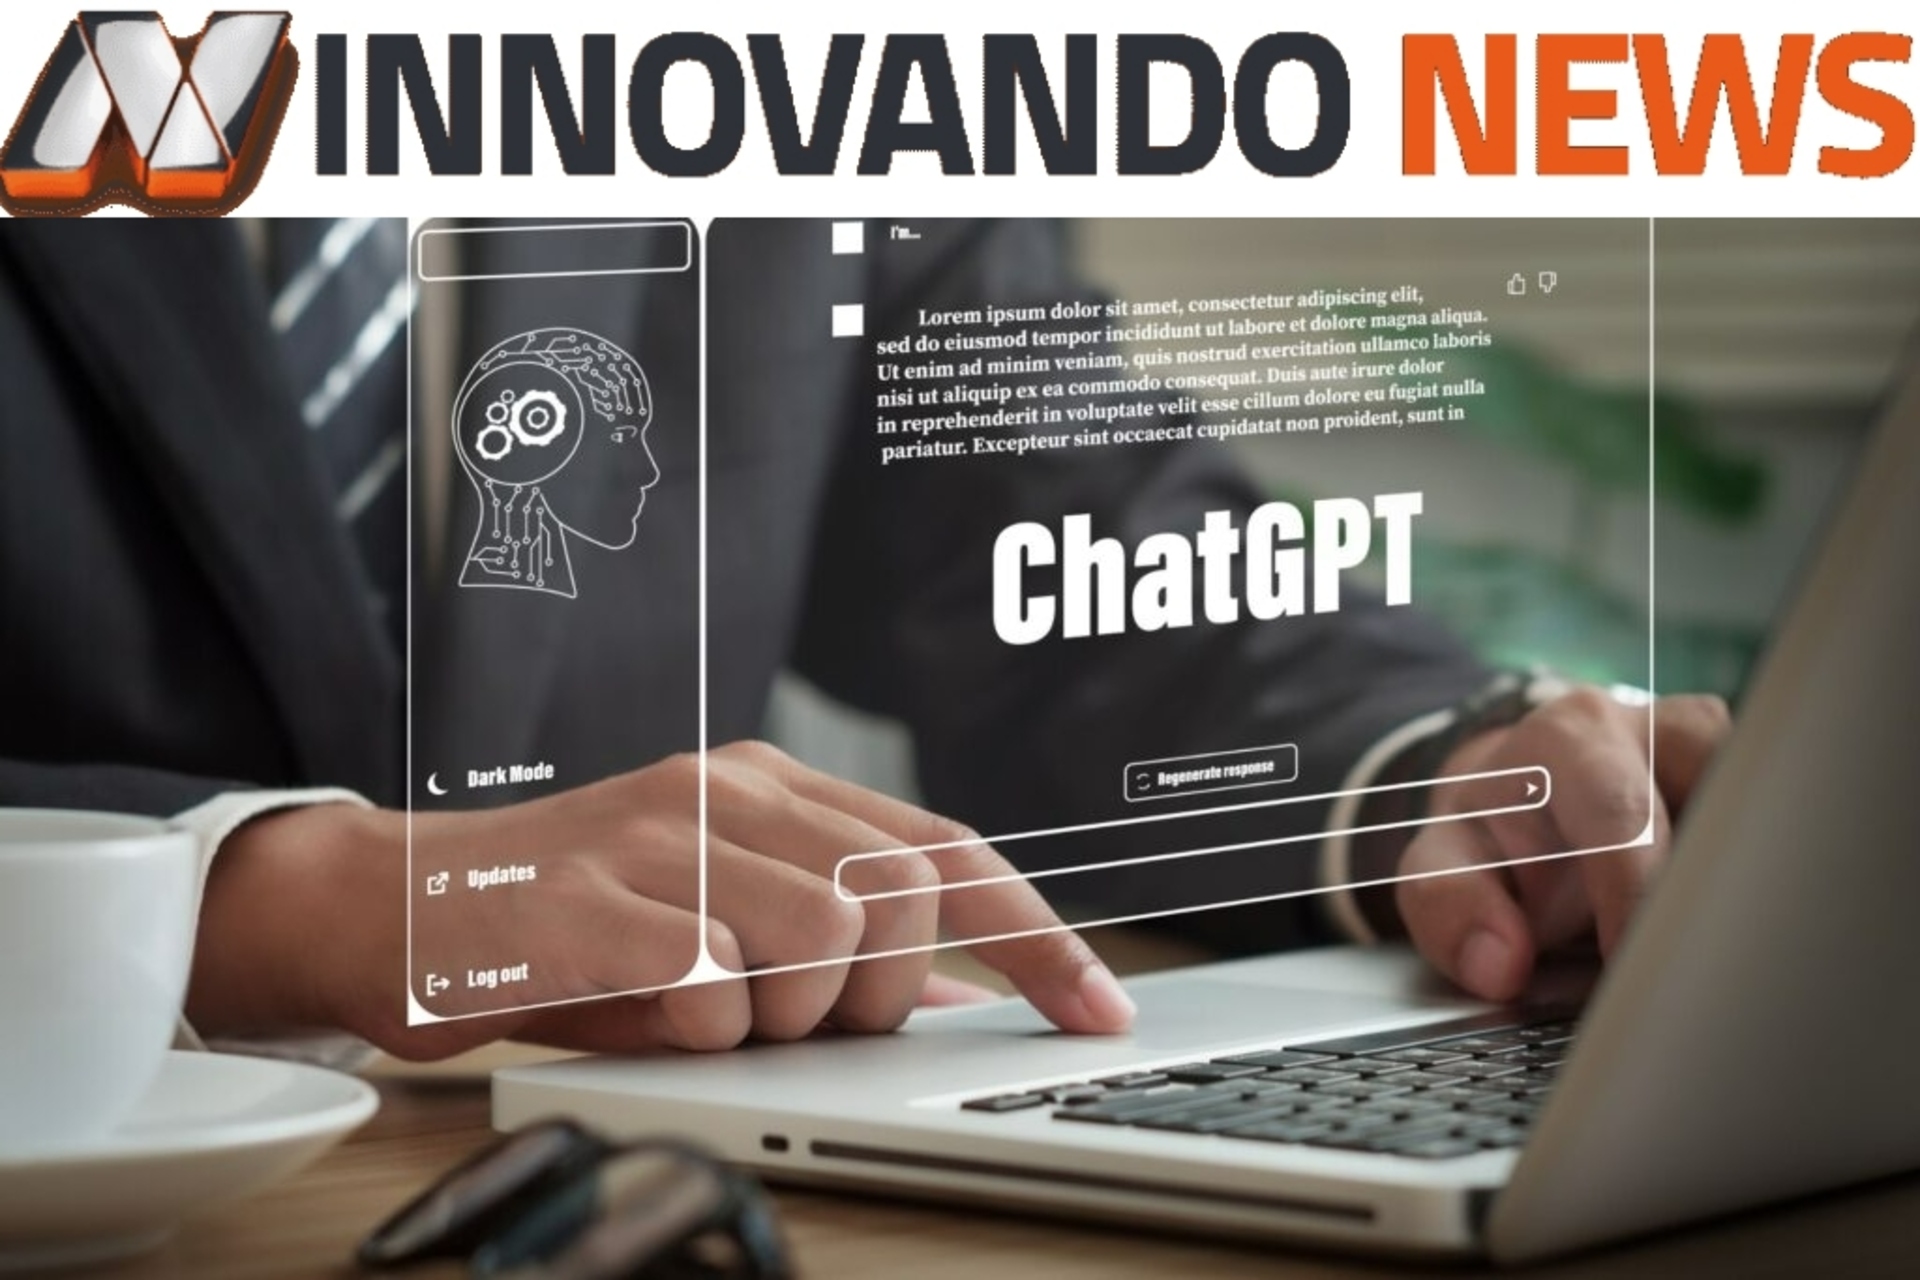 ChatGPT: Wir haben ChatGPT von OpenAI interviewt und sie gebeten, uns etwas über Innovando.News und die Beziehung zwischen Journalismus und Kommunikation zu erzählen